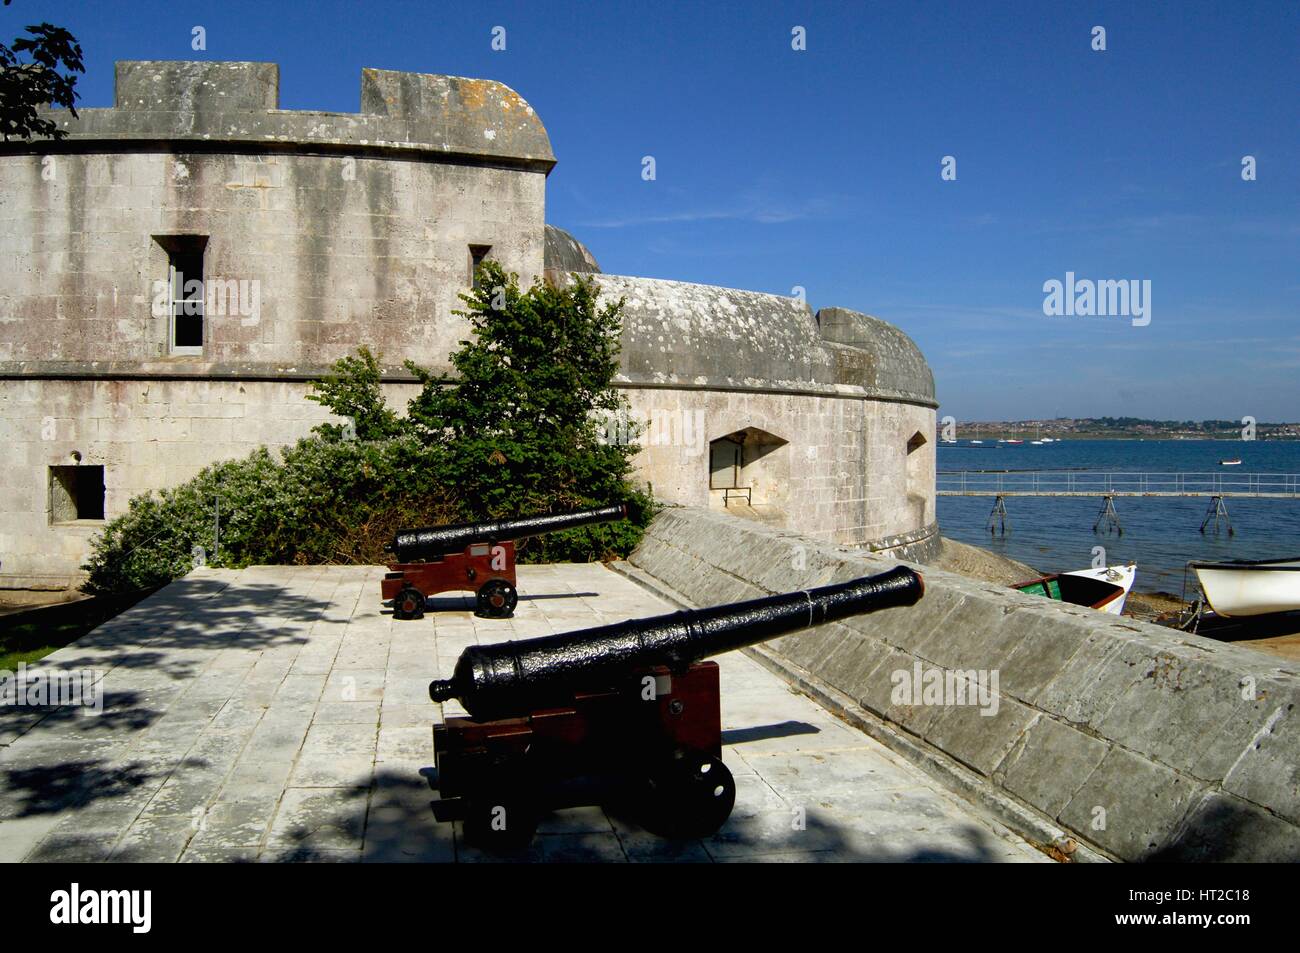 Kanonen auf einer Waffe Plattform, Portland Castle, Dorset, 2004. Künstler: Historisches England Angestellter Fotograf. Stockfoto